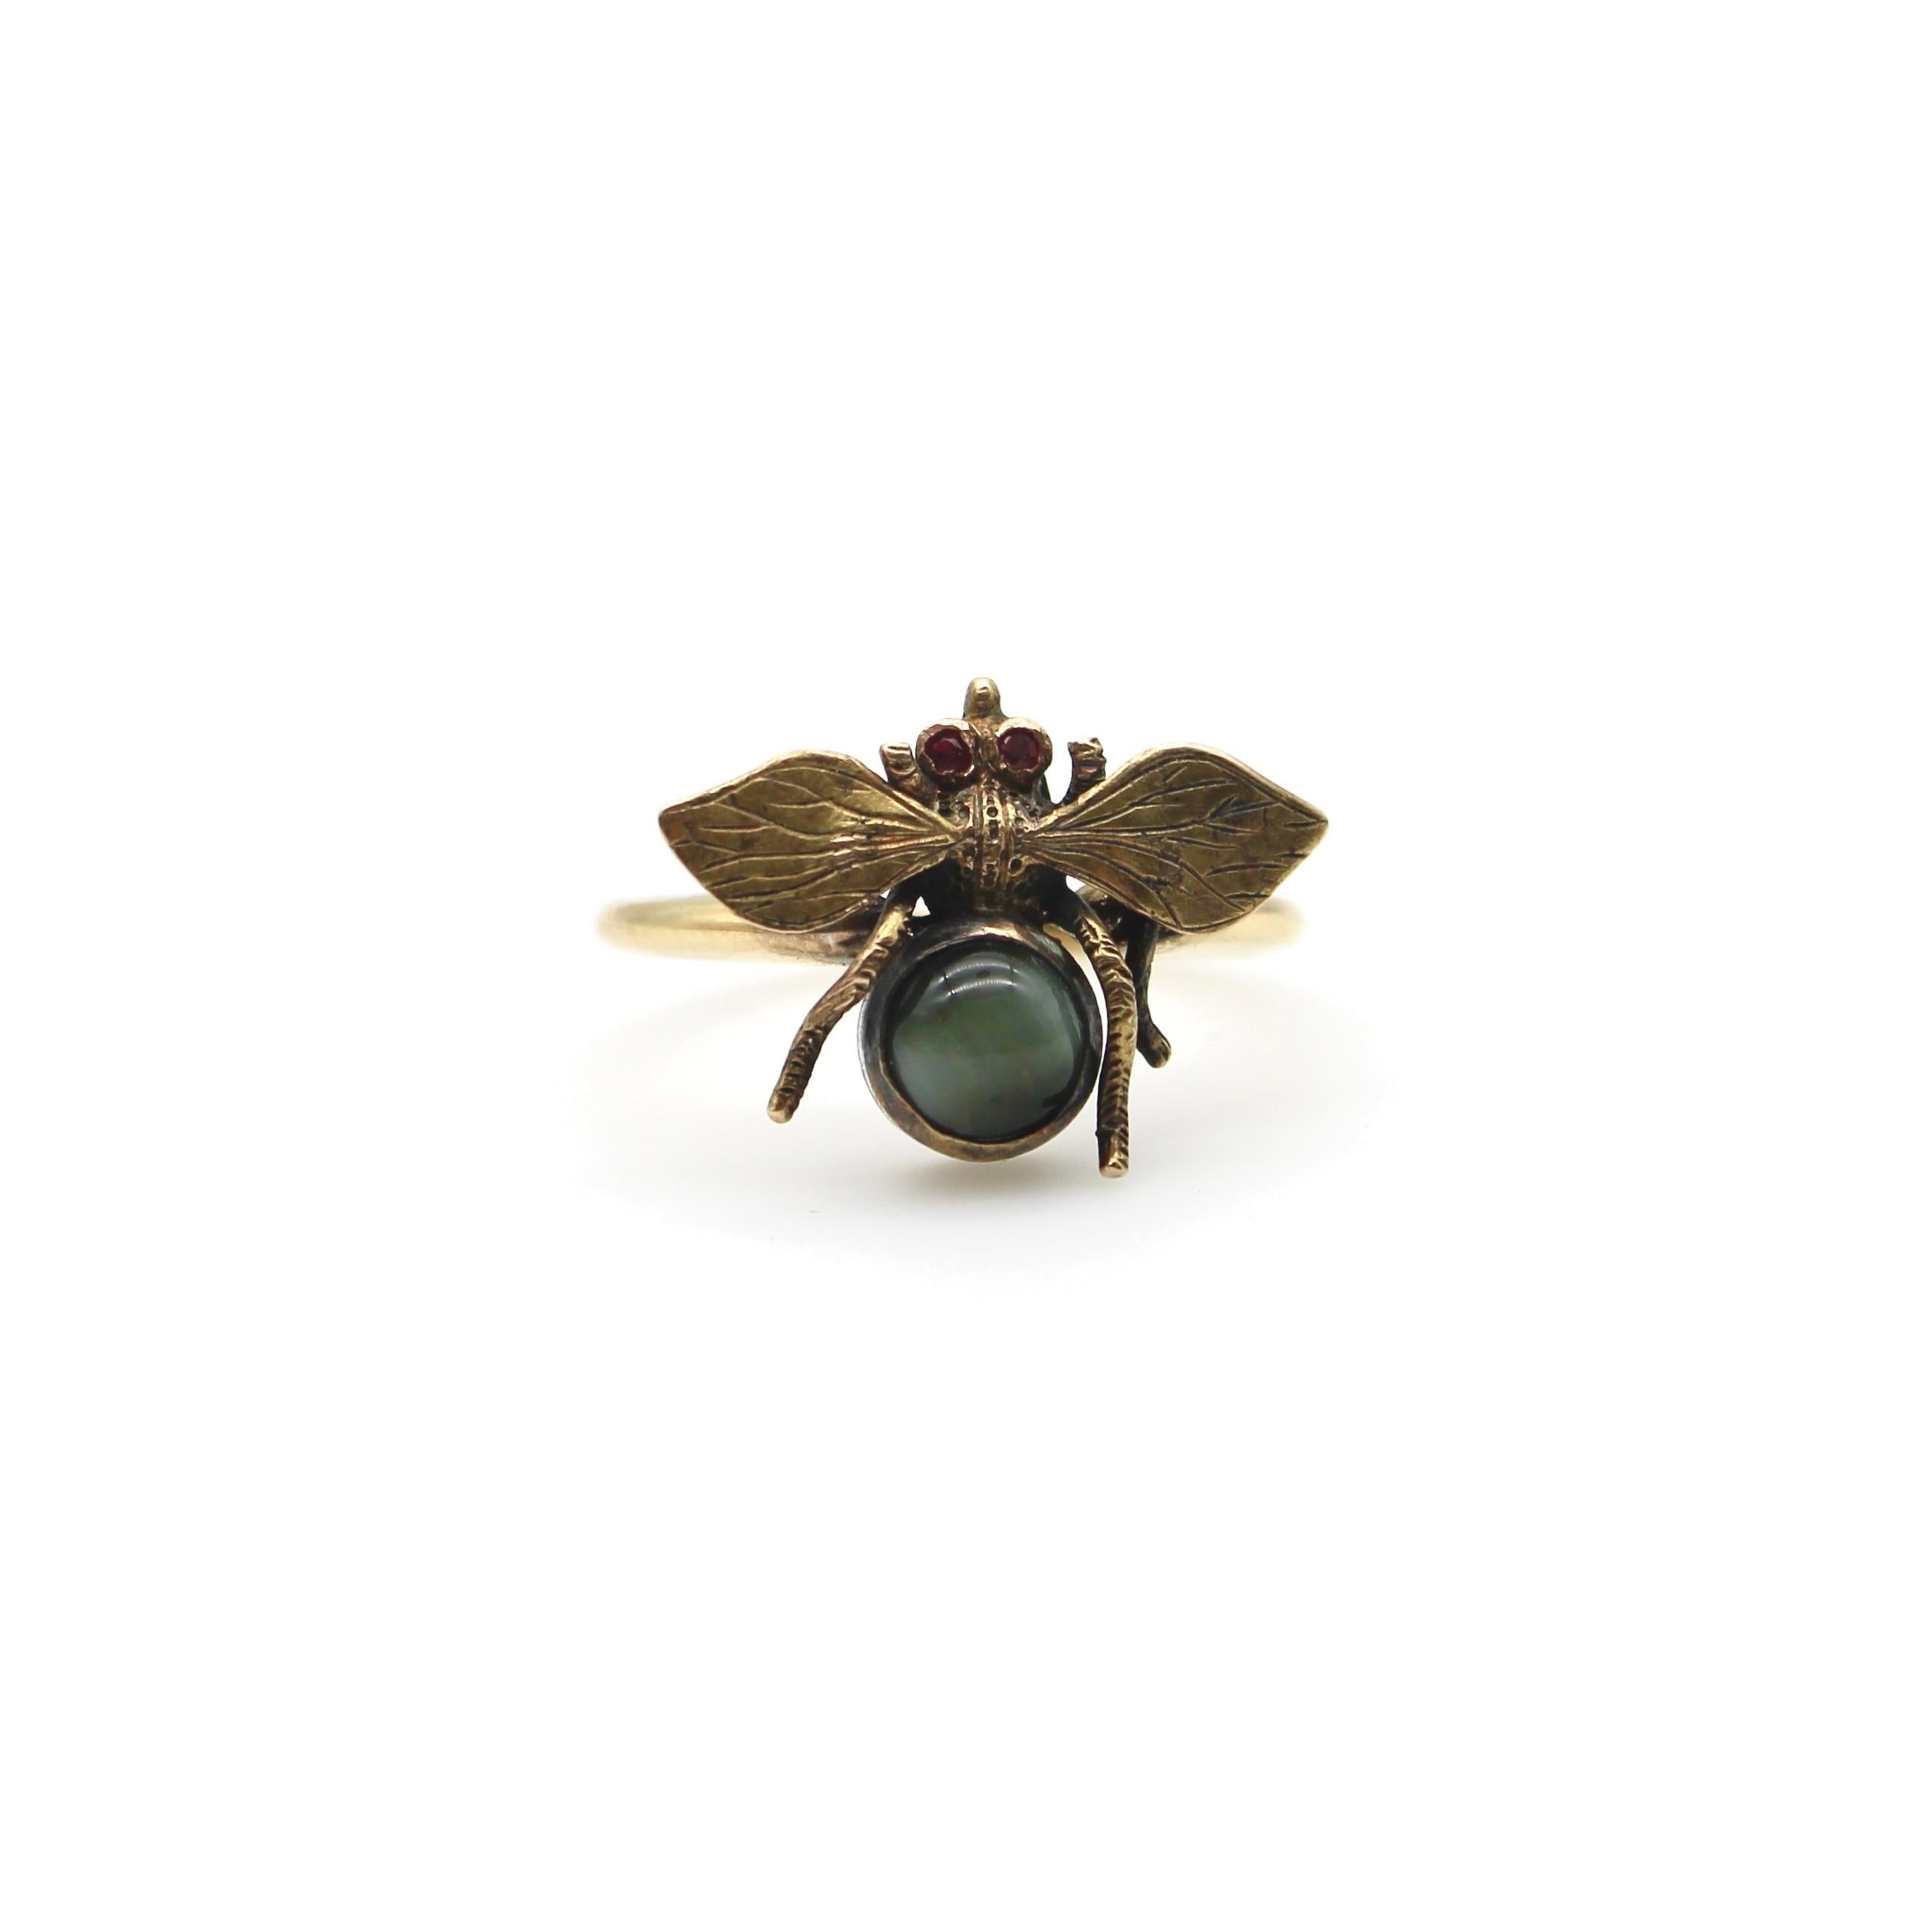 Ein schöner Bienenring aus der viktorianischen Ära, hergestellt aus einer Stecknadel. Die Augen sind mit Rubinen besetzt und der Brustkorb besteht aus einem grauen Katzenaugen-Edelstein. In der Sprache der viktorianischen Symbolik und